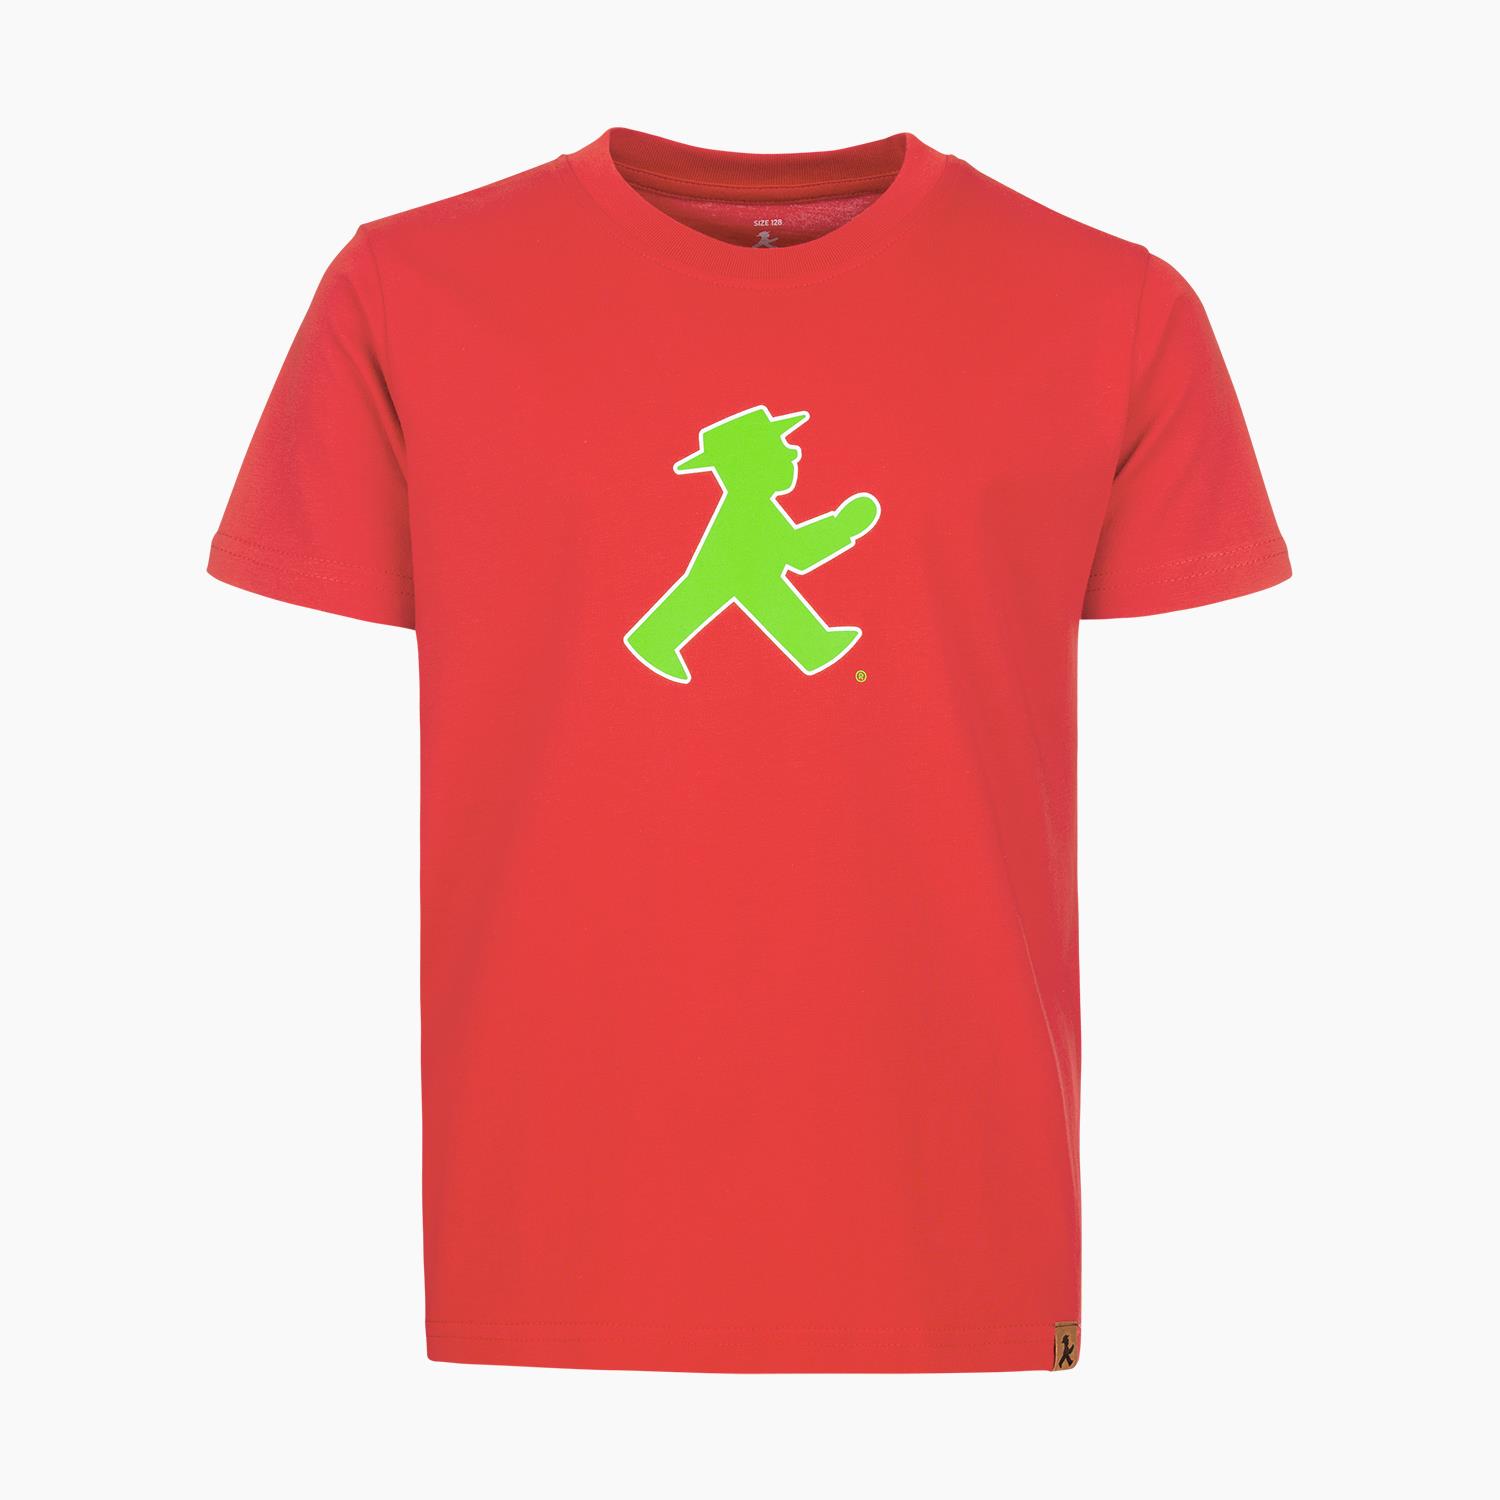 PRACHTKERLCHEN red 104/ Kids T-Shirt